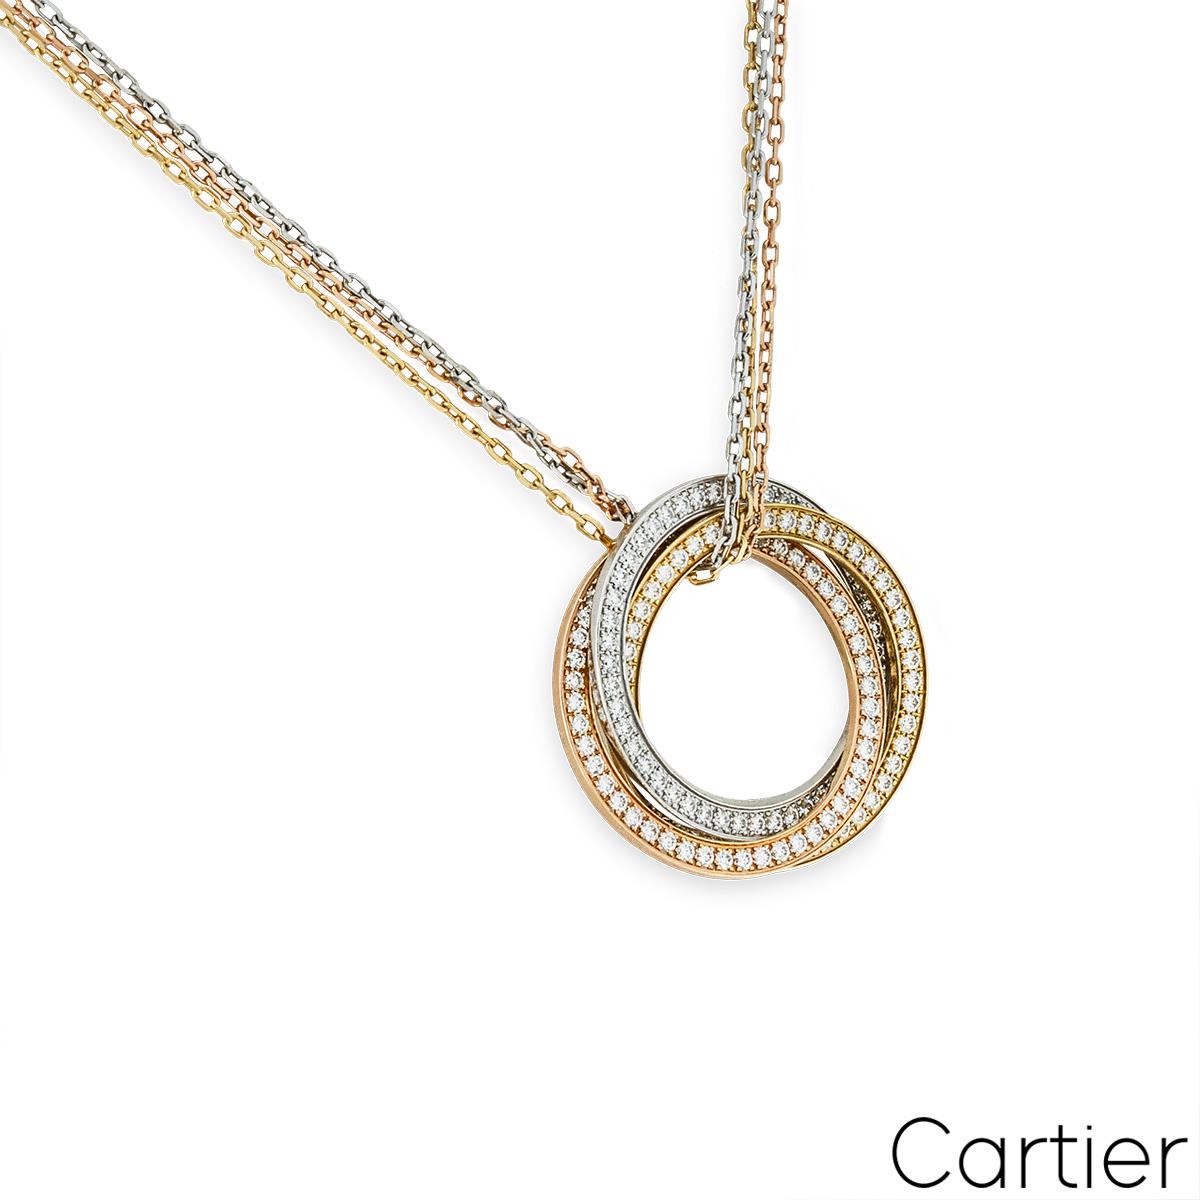 Collier de diamants en or tricolore 18 carats de Cartier, issu de la collection Trinity De Cartier. Le collier est composé de trois motifs circulaires ajourés s'entrelaçant en or jaune, blanc et rose, sertis de 144 diamants ronds de taille brillant